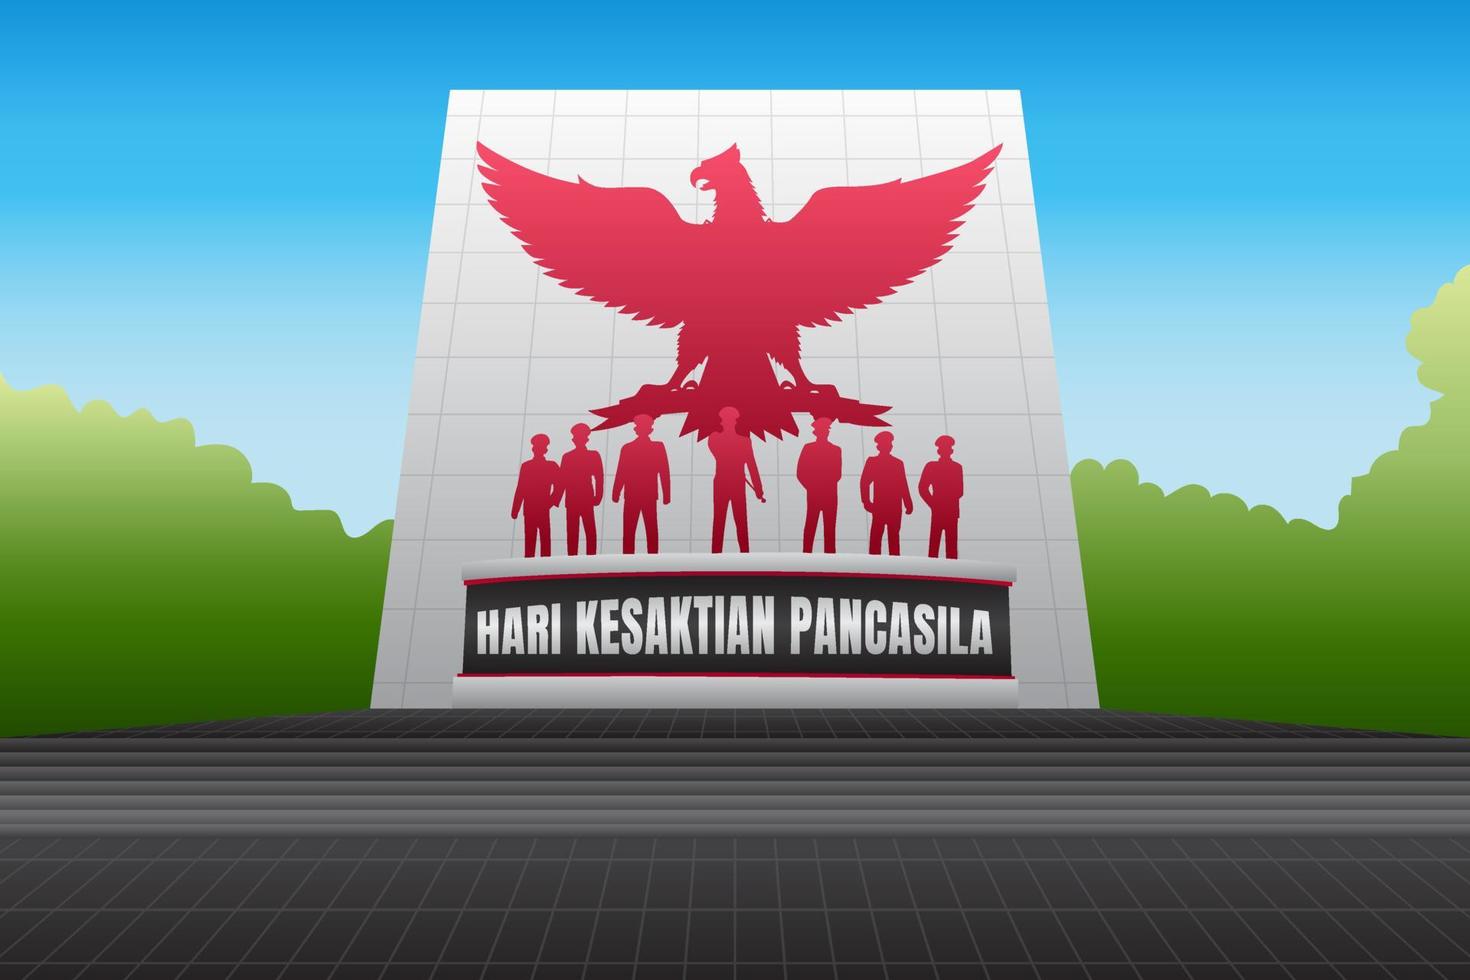 Hintergrund des nationalen Gedenkens der indonesischen Nation. Hari Kesaktian Pancasila, was Tag der Heiligkeit von Pancasila bedeutet vektor